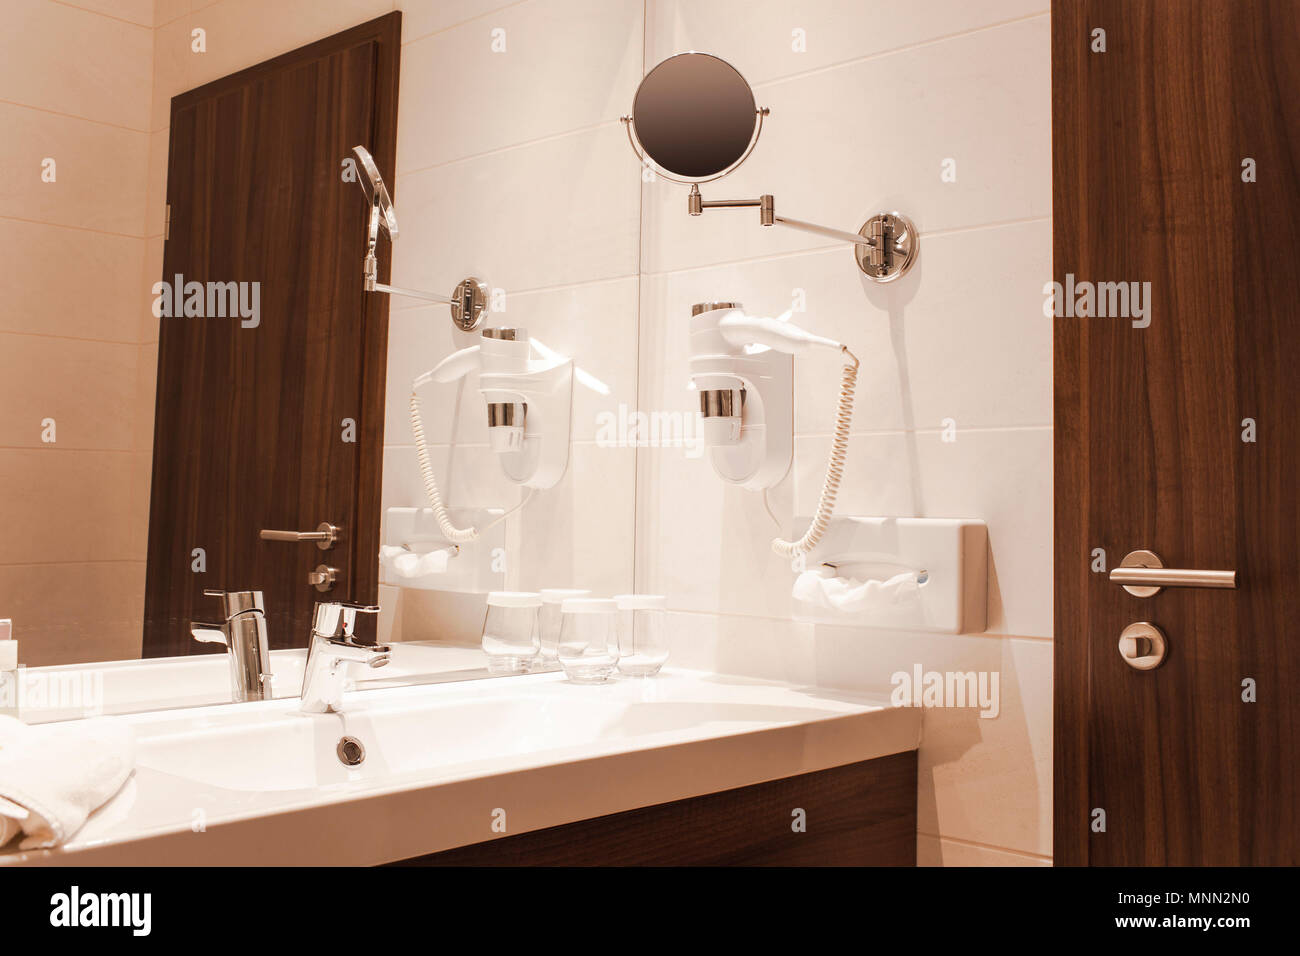 interior of luxury hotel bathroom Stock Photo